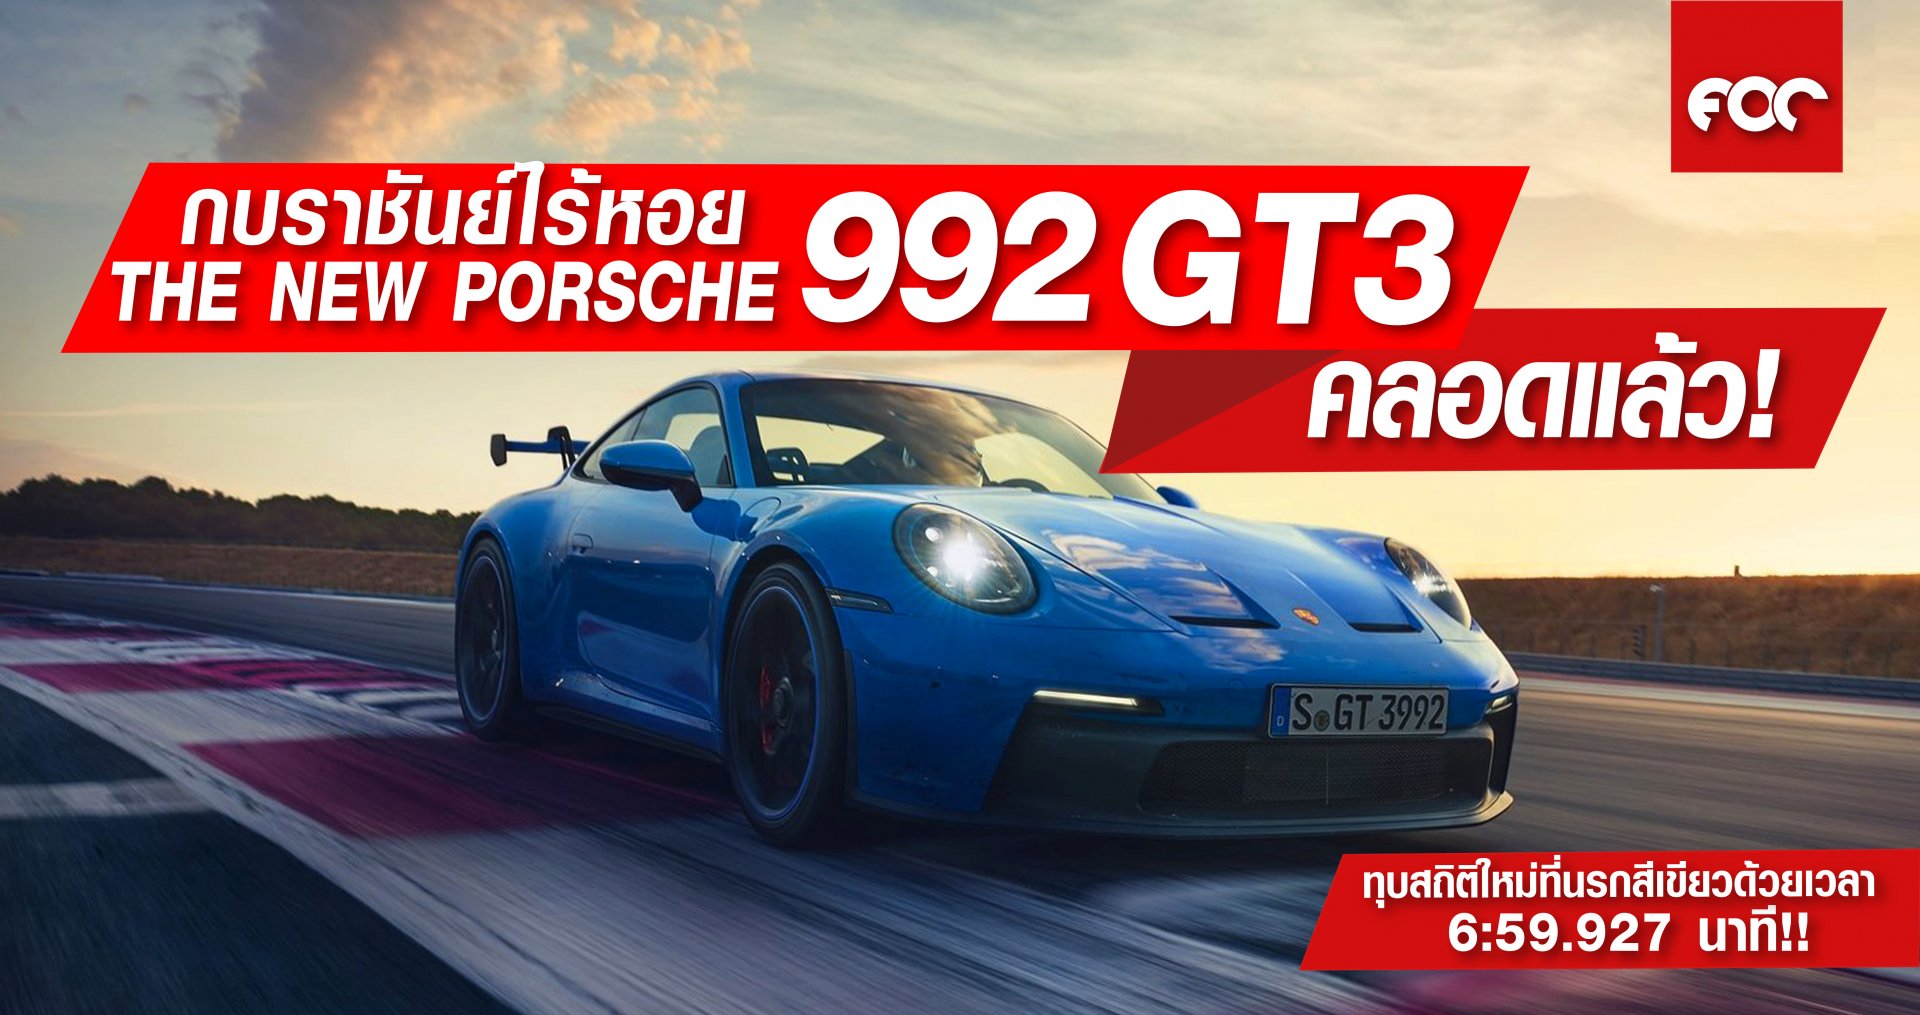 กบราชันย์ไร้หอย The New Porsche 992 GT3 คลอดแล้ว! ทุบสถิติใหม่ที่นรกสีเขียวด้วยเวลา 6:59.927 นาที!!